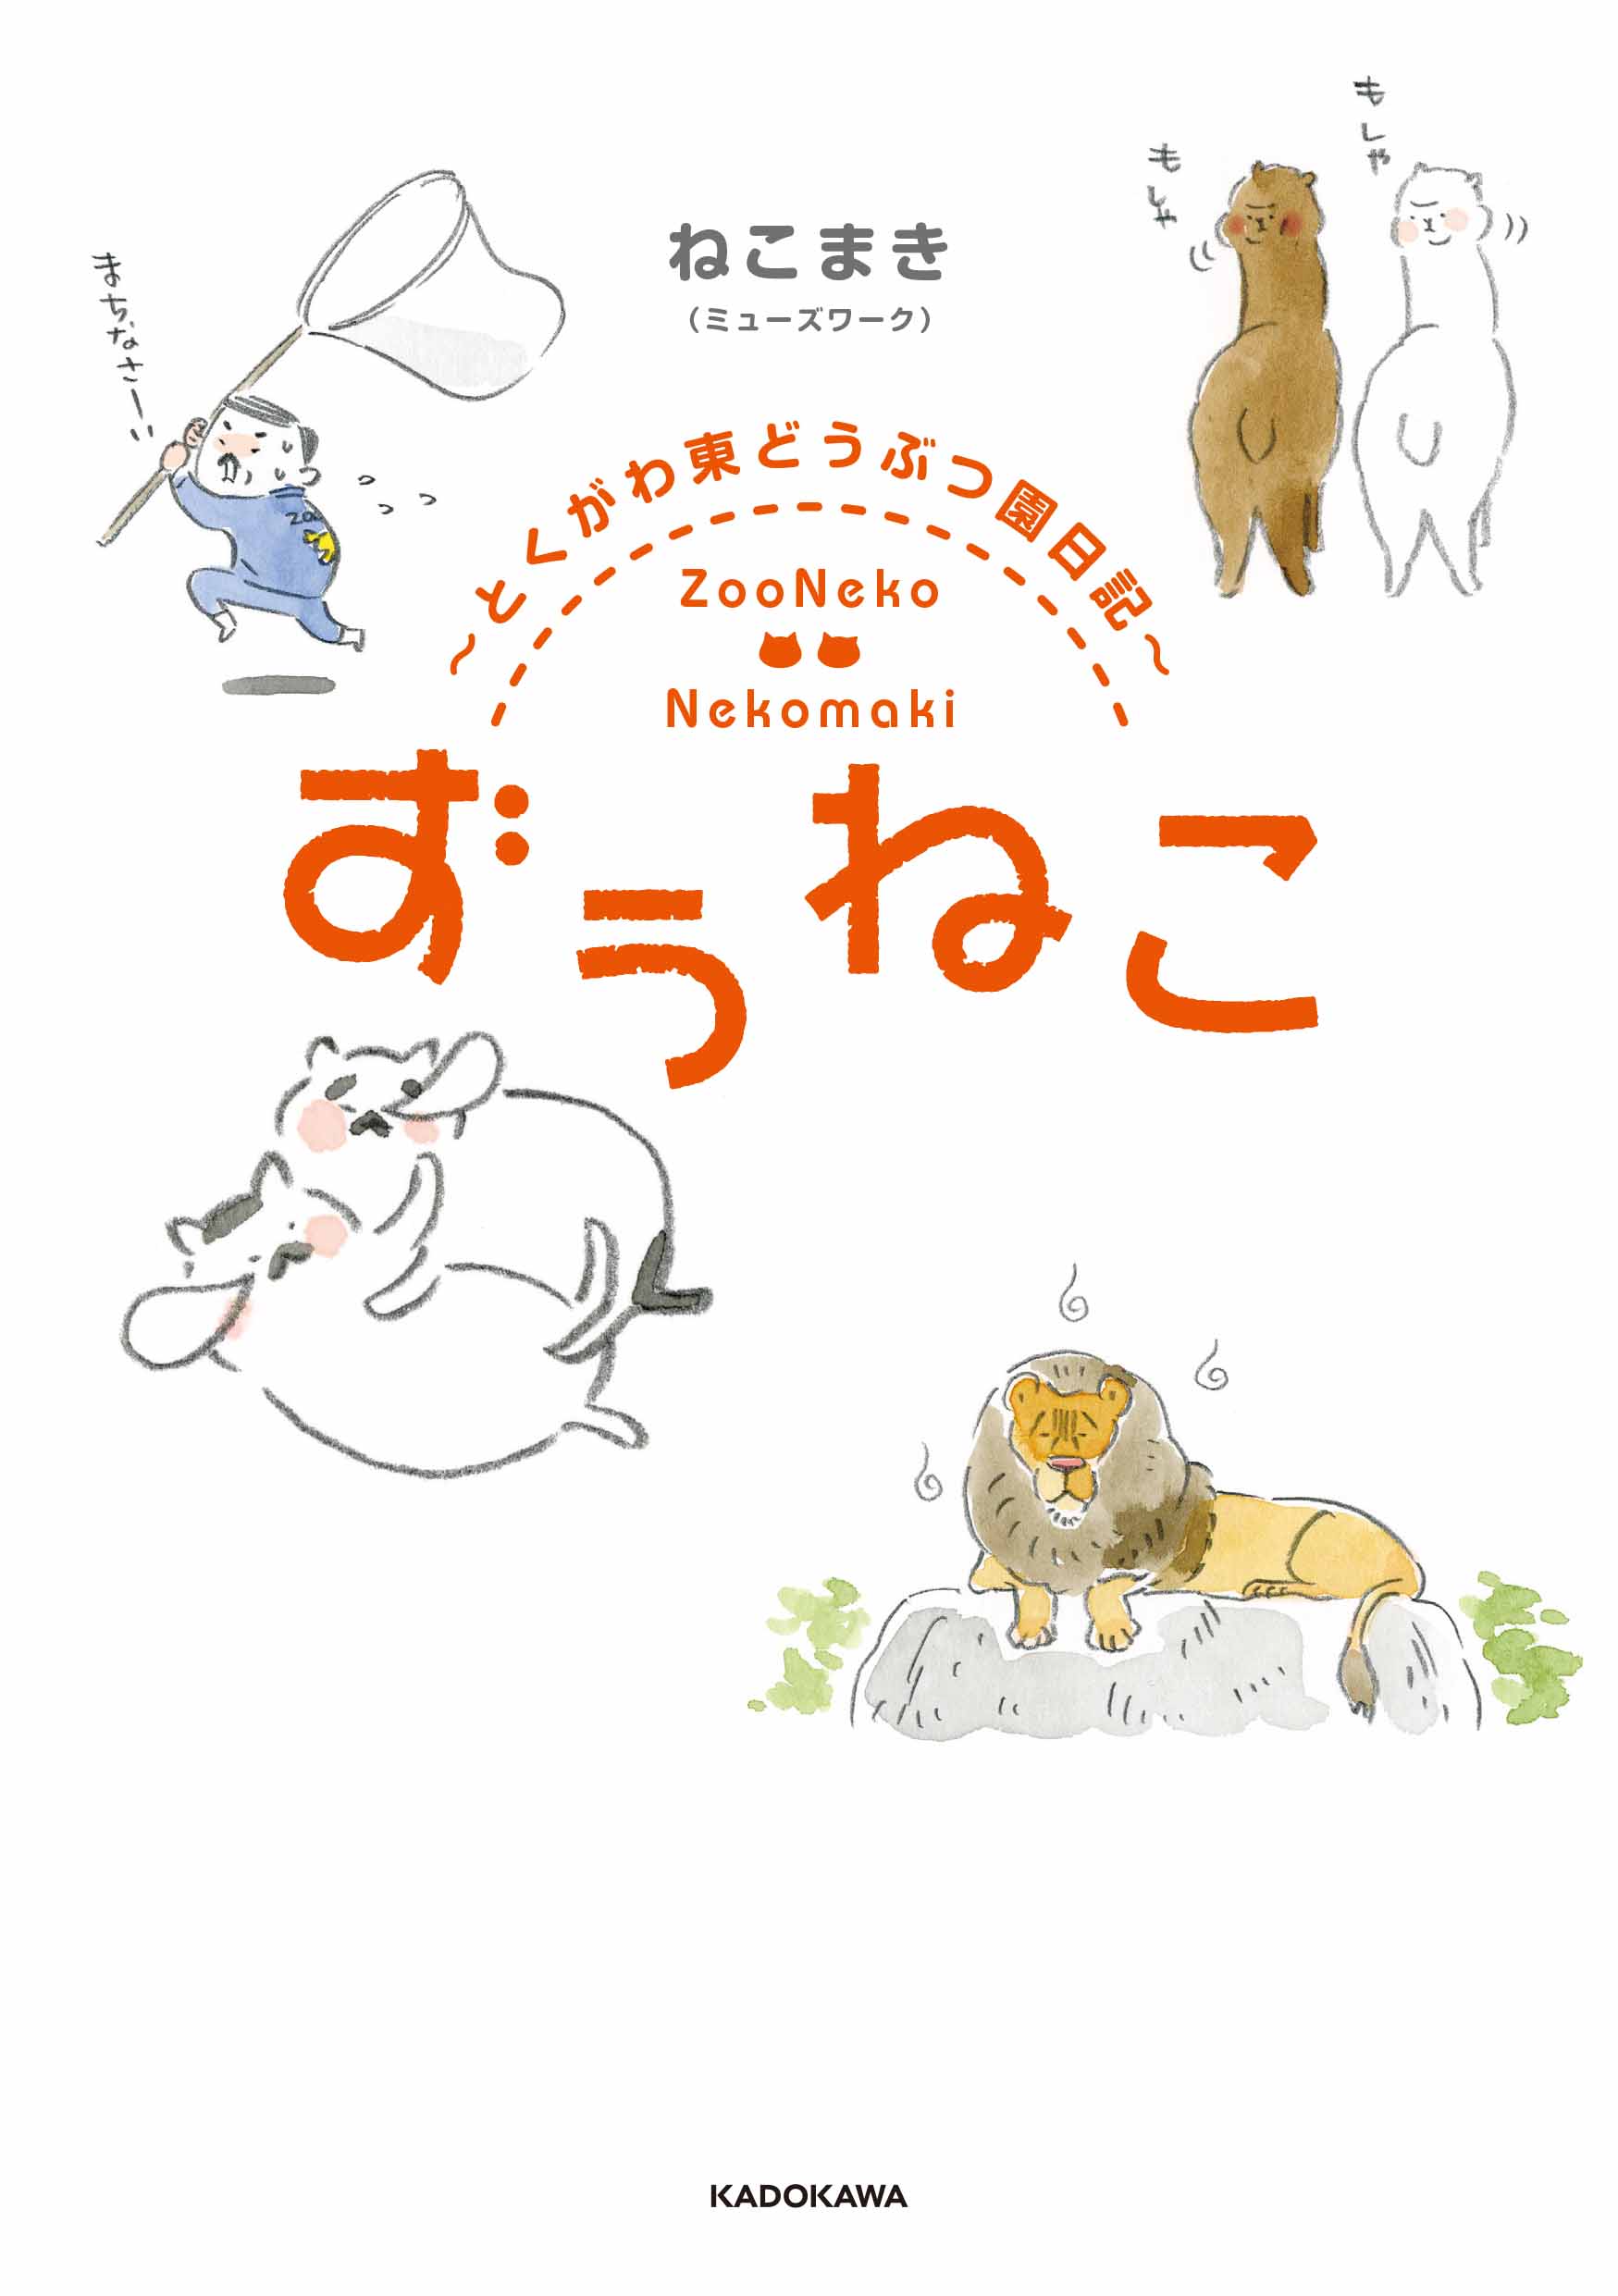 大ヒット御礼 動物園に暮らす猫たちの ゆるふわ コミック ずぅねこ 重版決定 株式会社kadokawaのプレスリリース